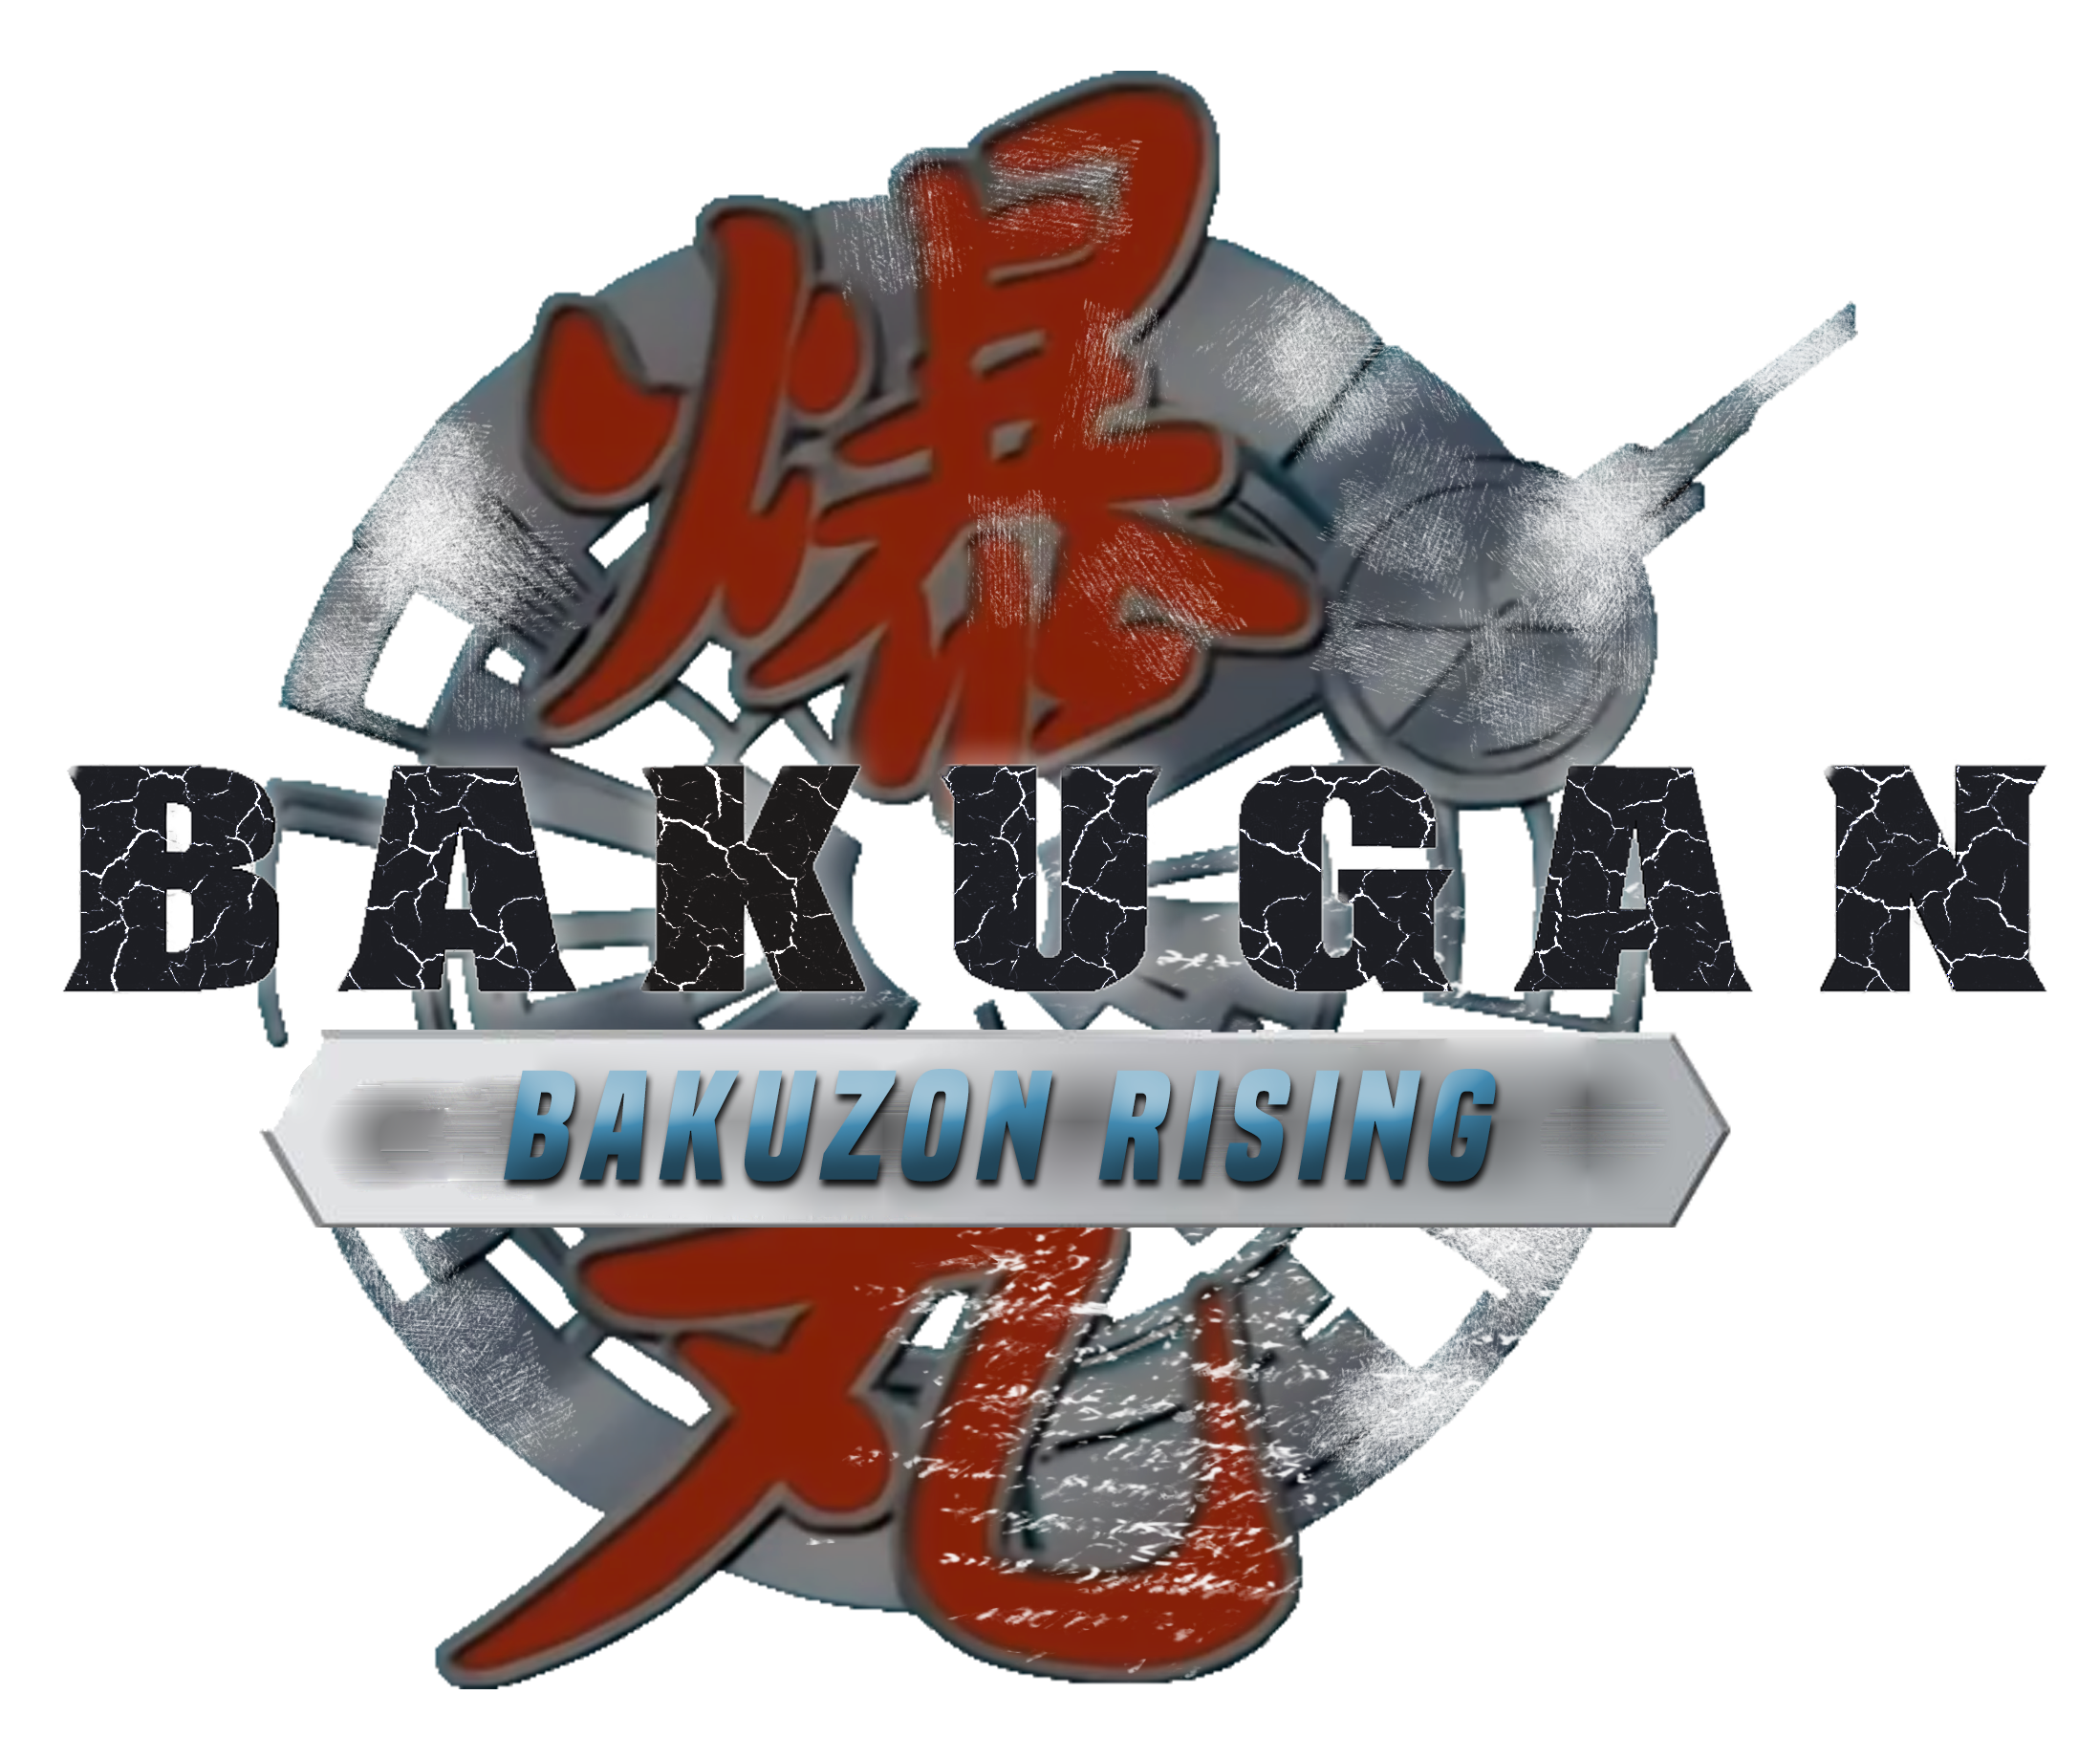 Bakugan, NinjaJojo's Bizarre Adventure Wiki